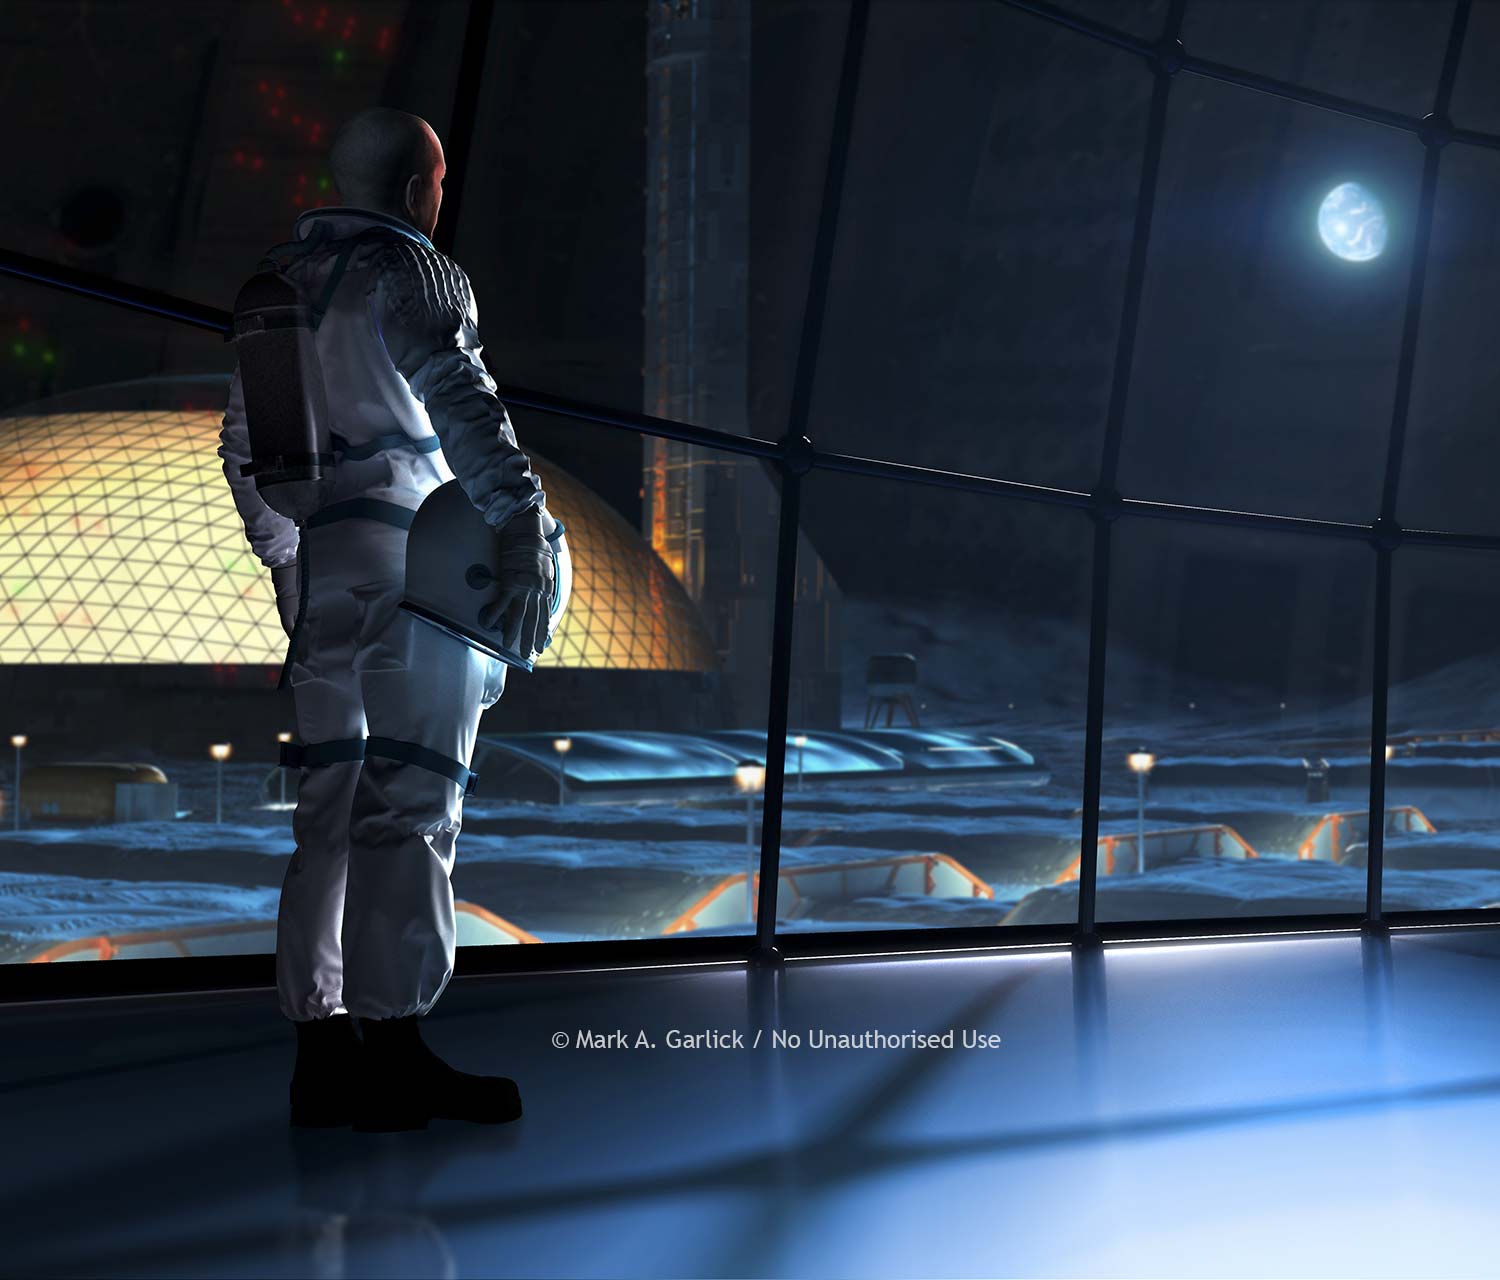 Lunar Station, science fiction artwork by Mark Garlick